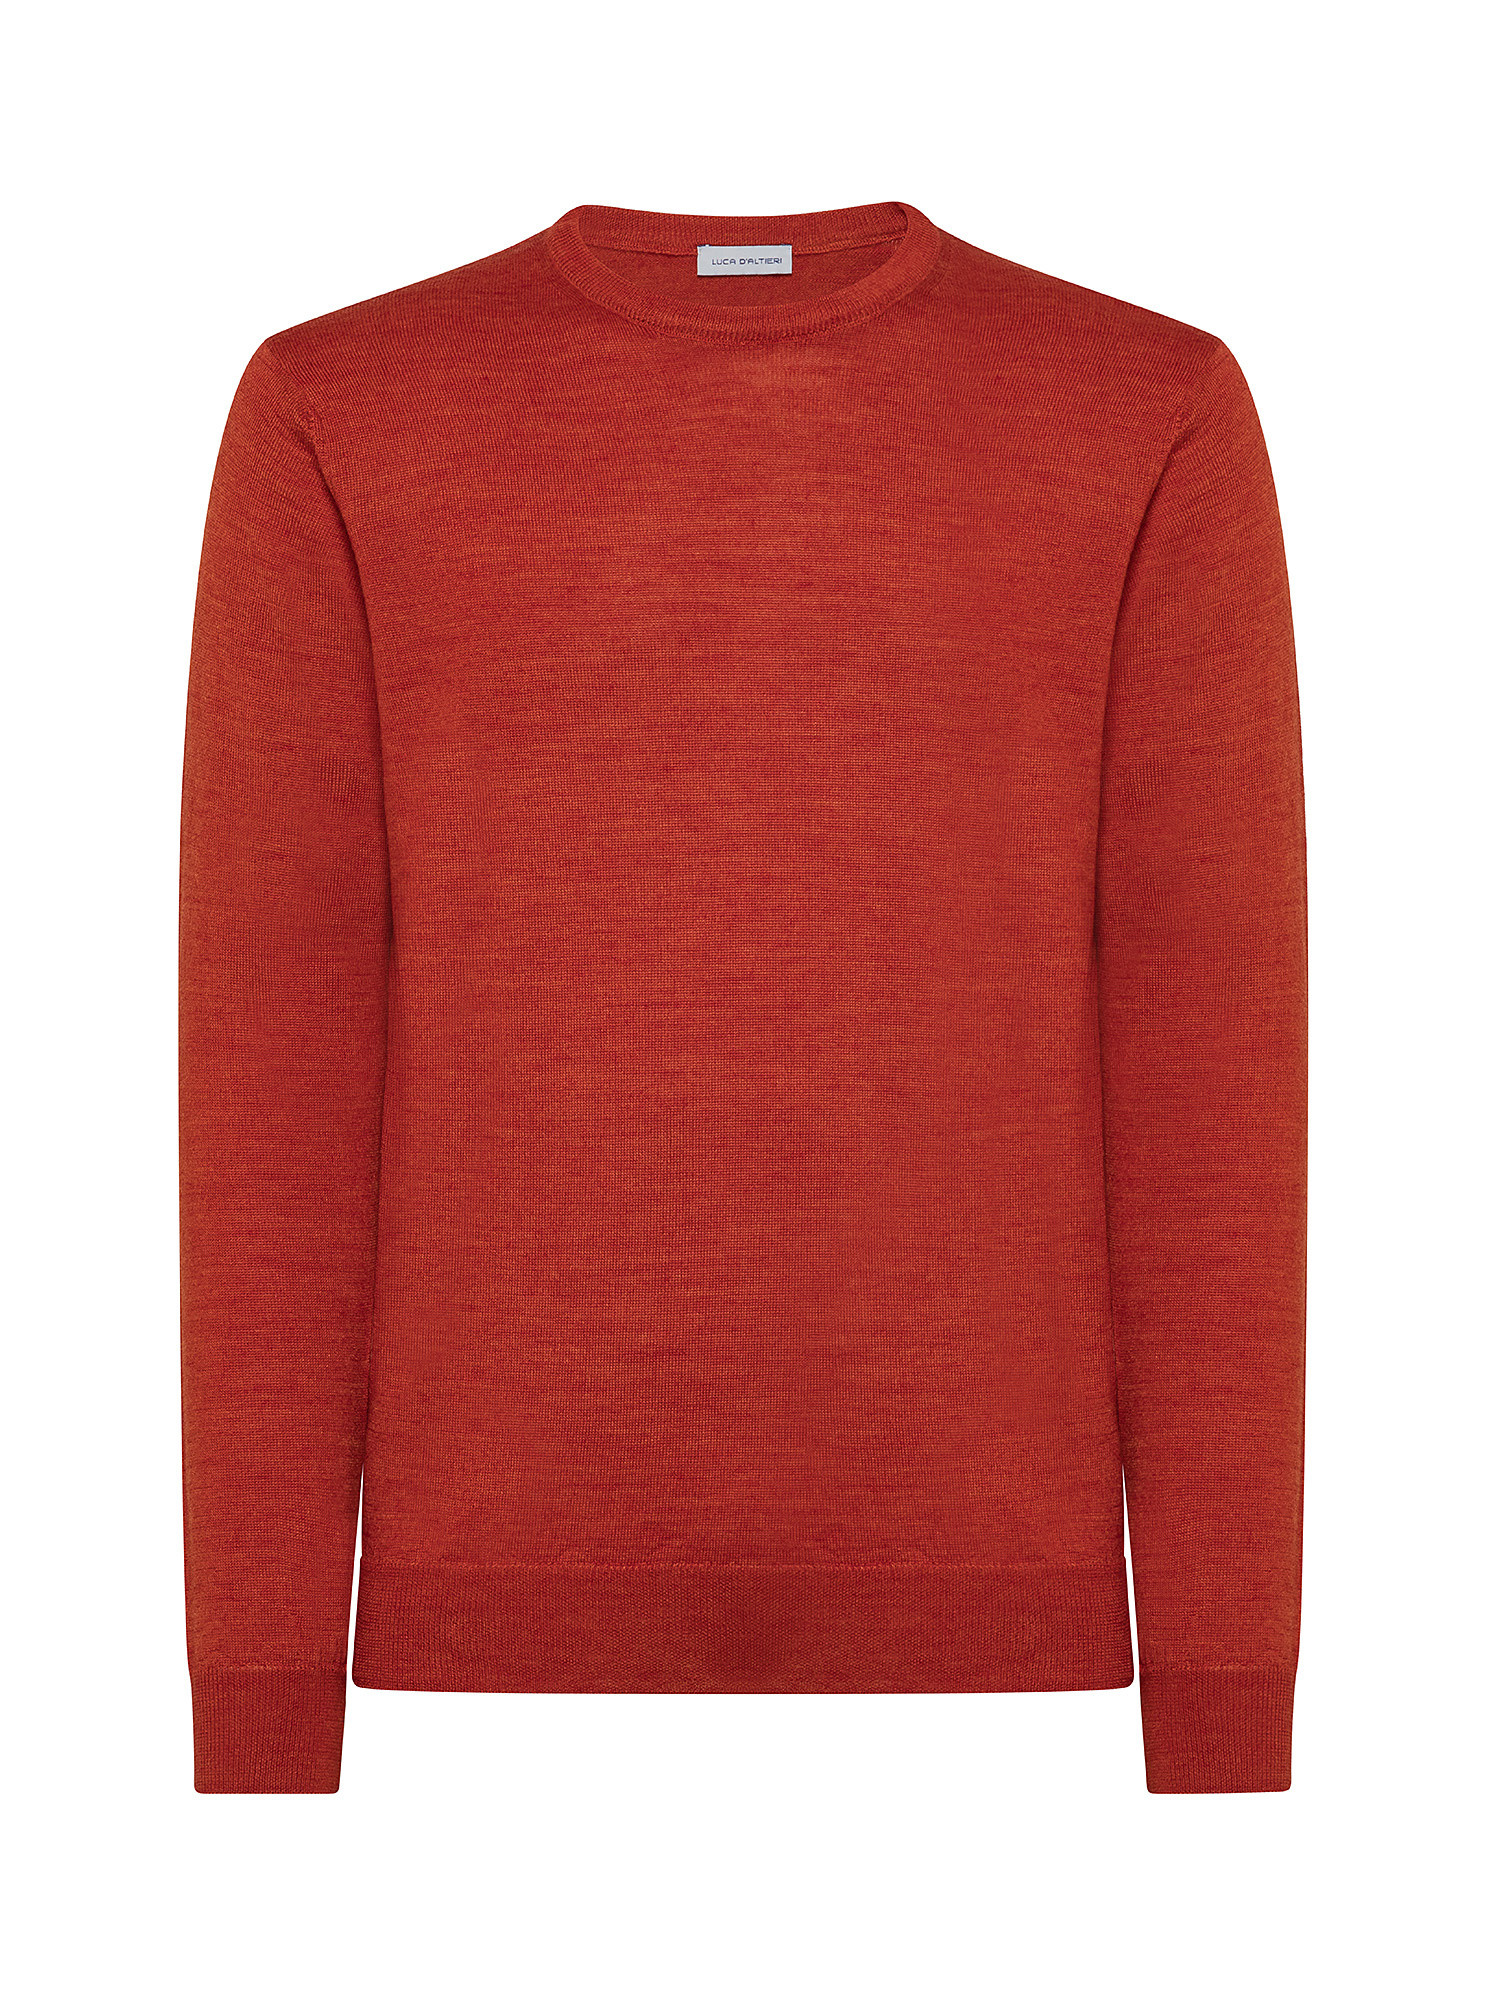 Merino Blend crewneck sweater - Machine washable, Orange, large image number 0